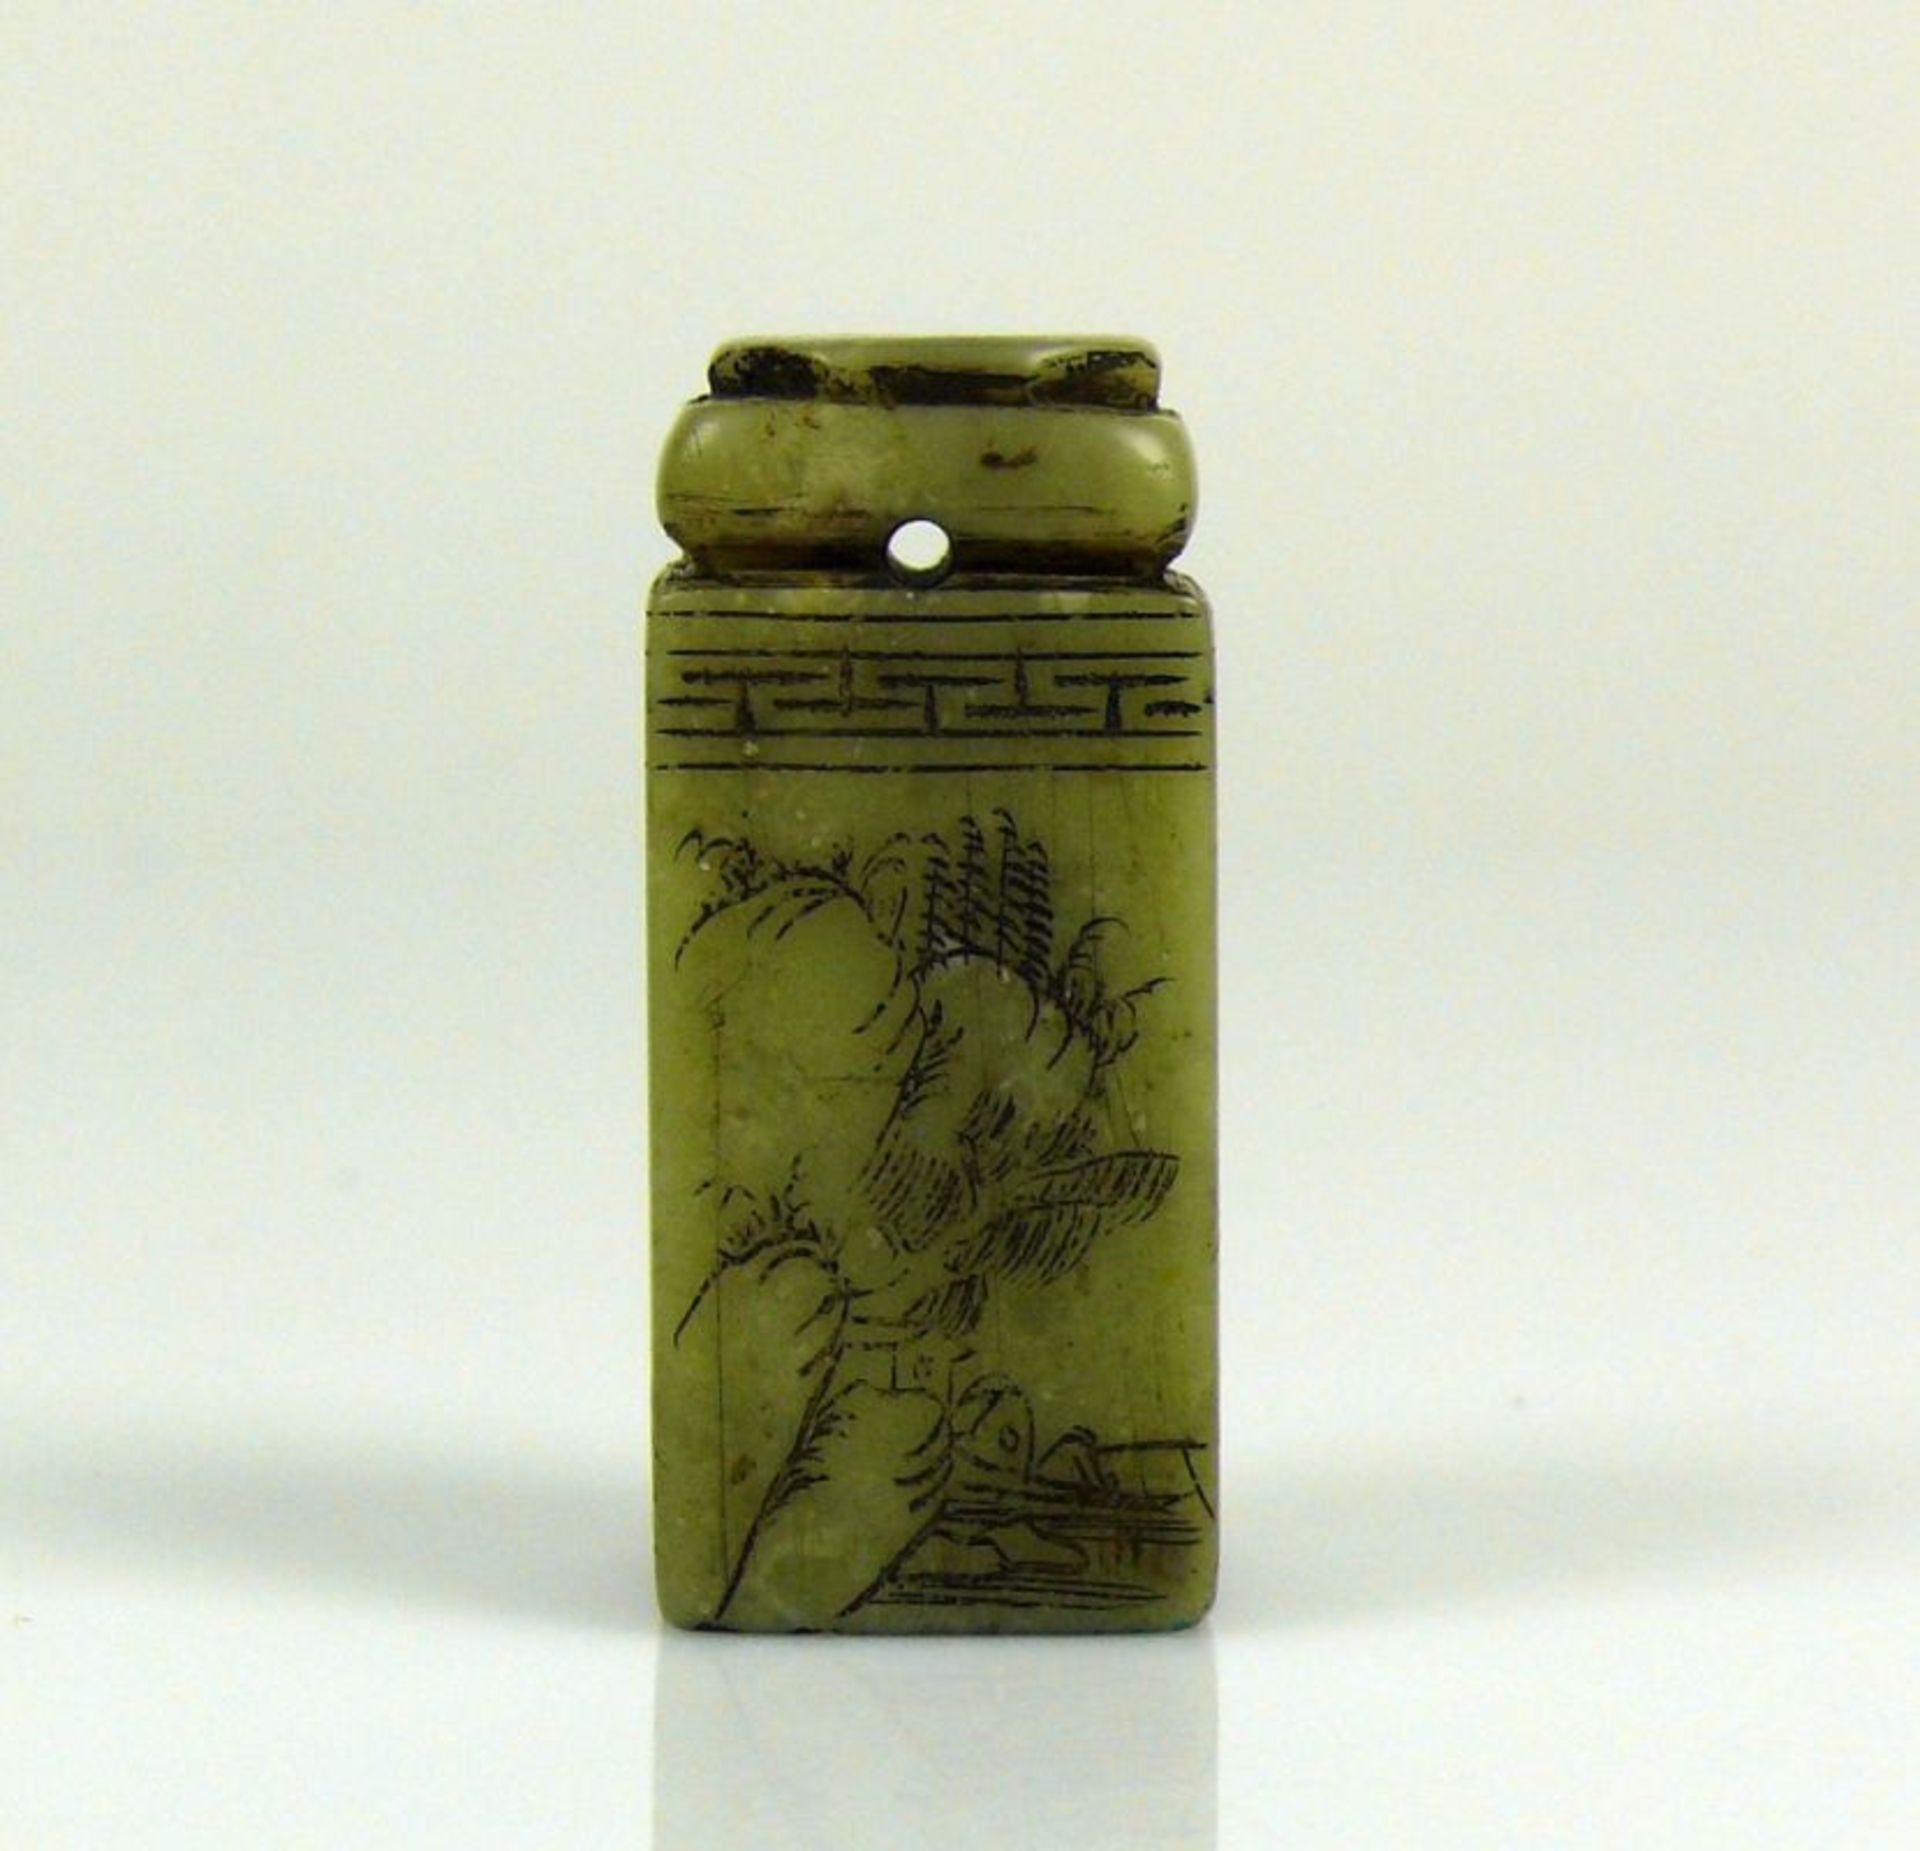 Petschaft hellgrüner Stein mit ziselierter Beschriftung und Floraldekor; Höhe: ca 5 cm - Bild 5 aus 7